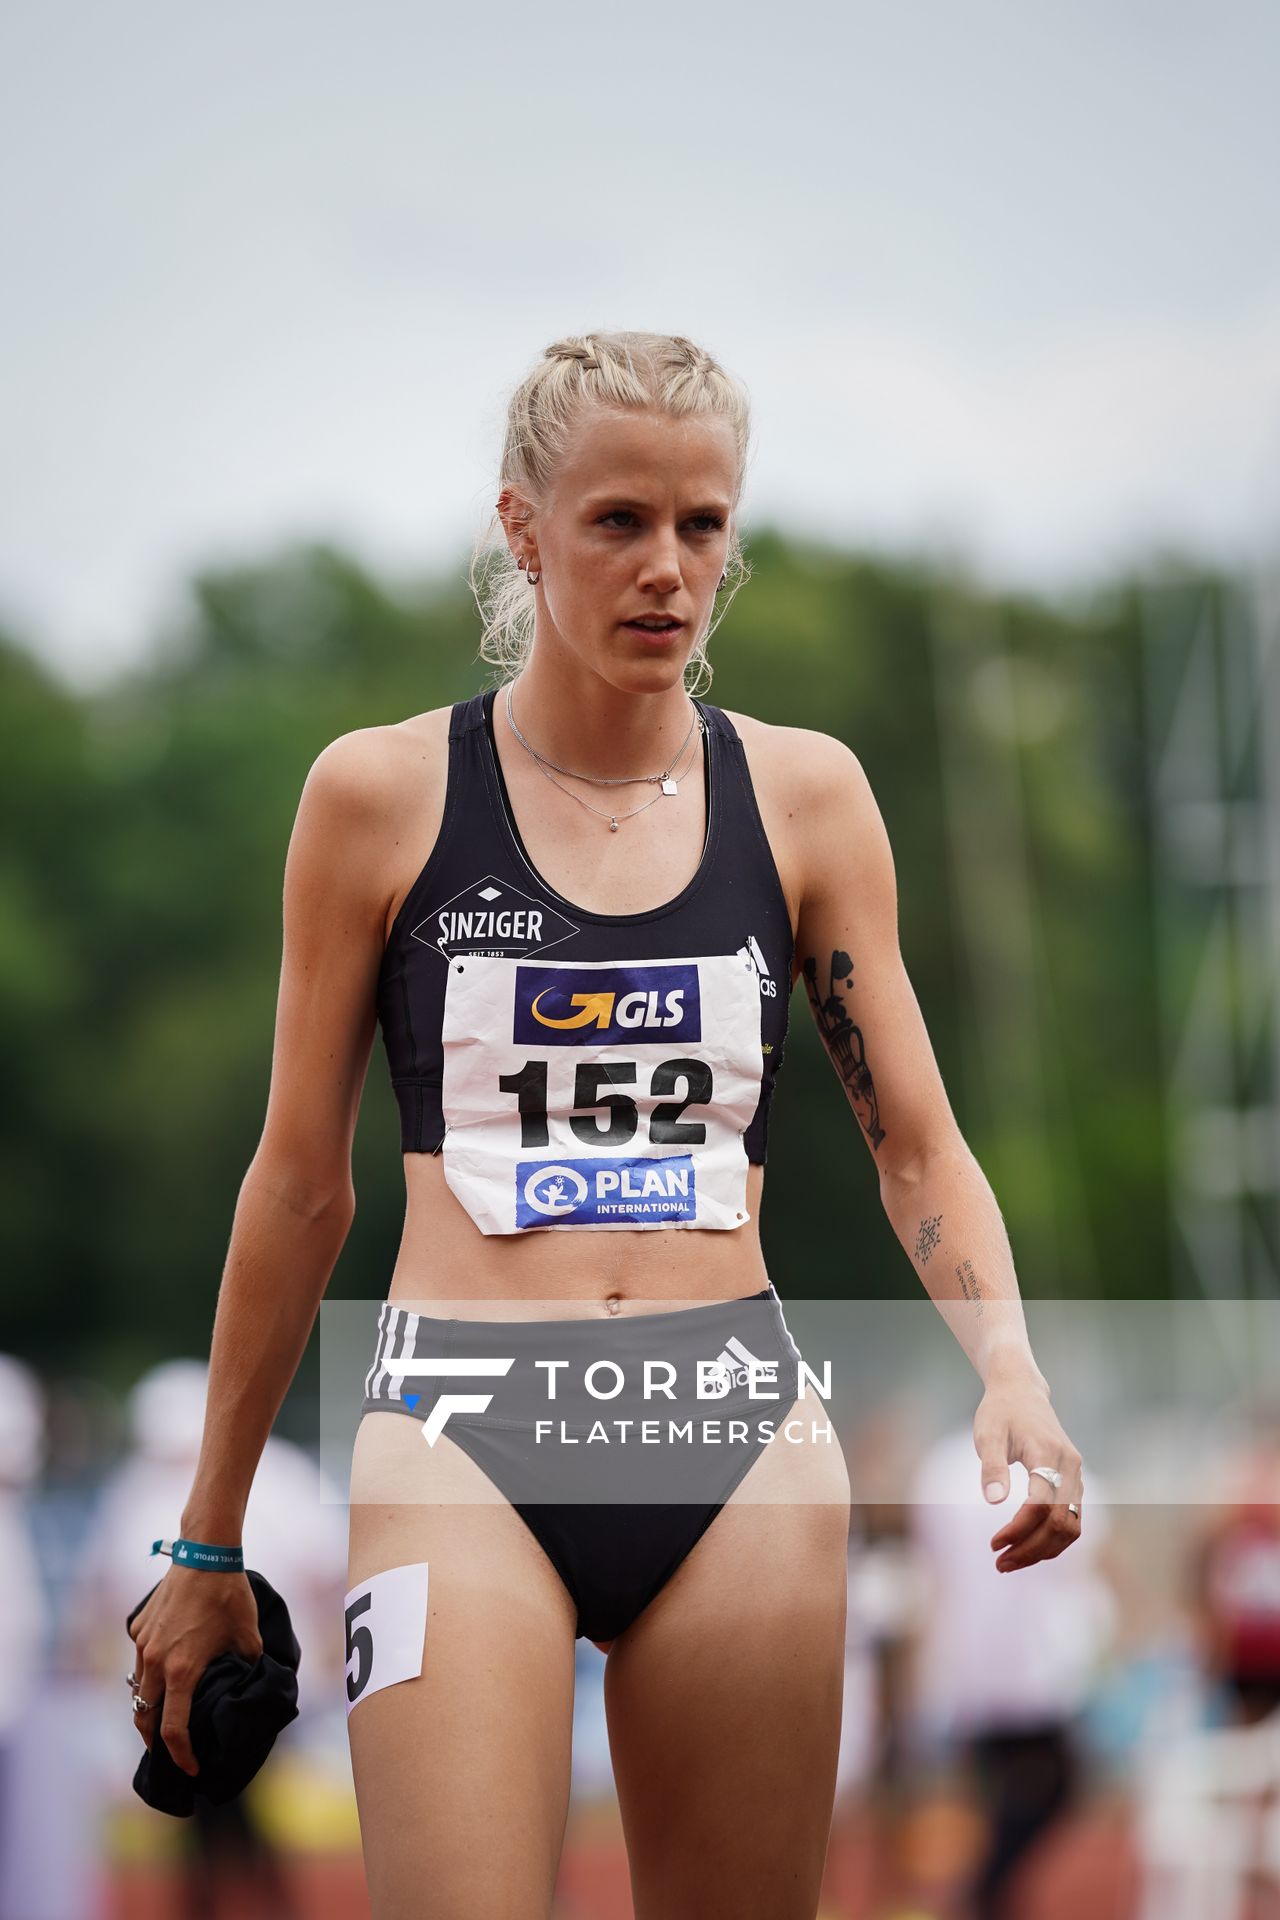 Majtie Kolberg (LG Kreis Ahrweiler) am 27.06.2021 waehrend den deutschen U23 Leichtathletik-Meisterschaften 2021 im Stadion Oberwerth in Koblenz